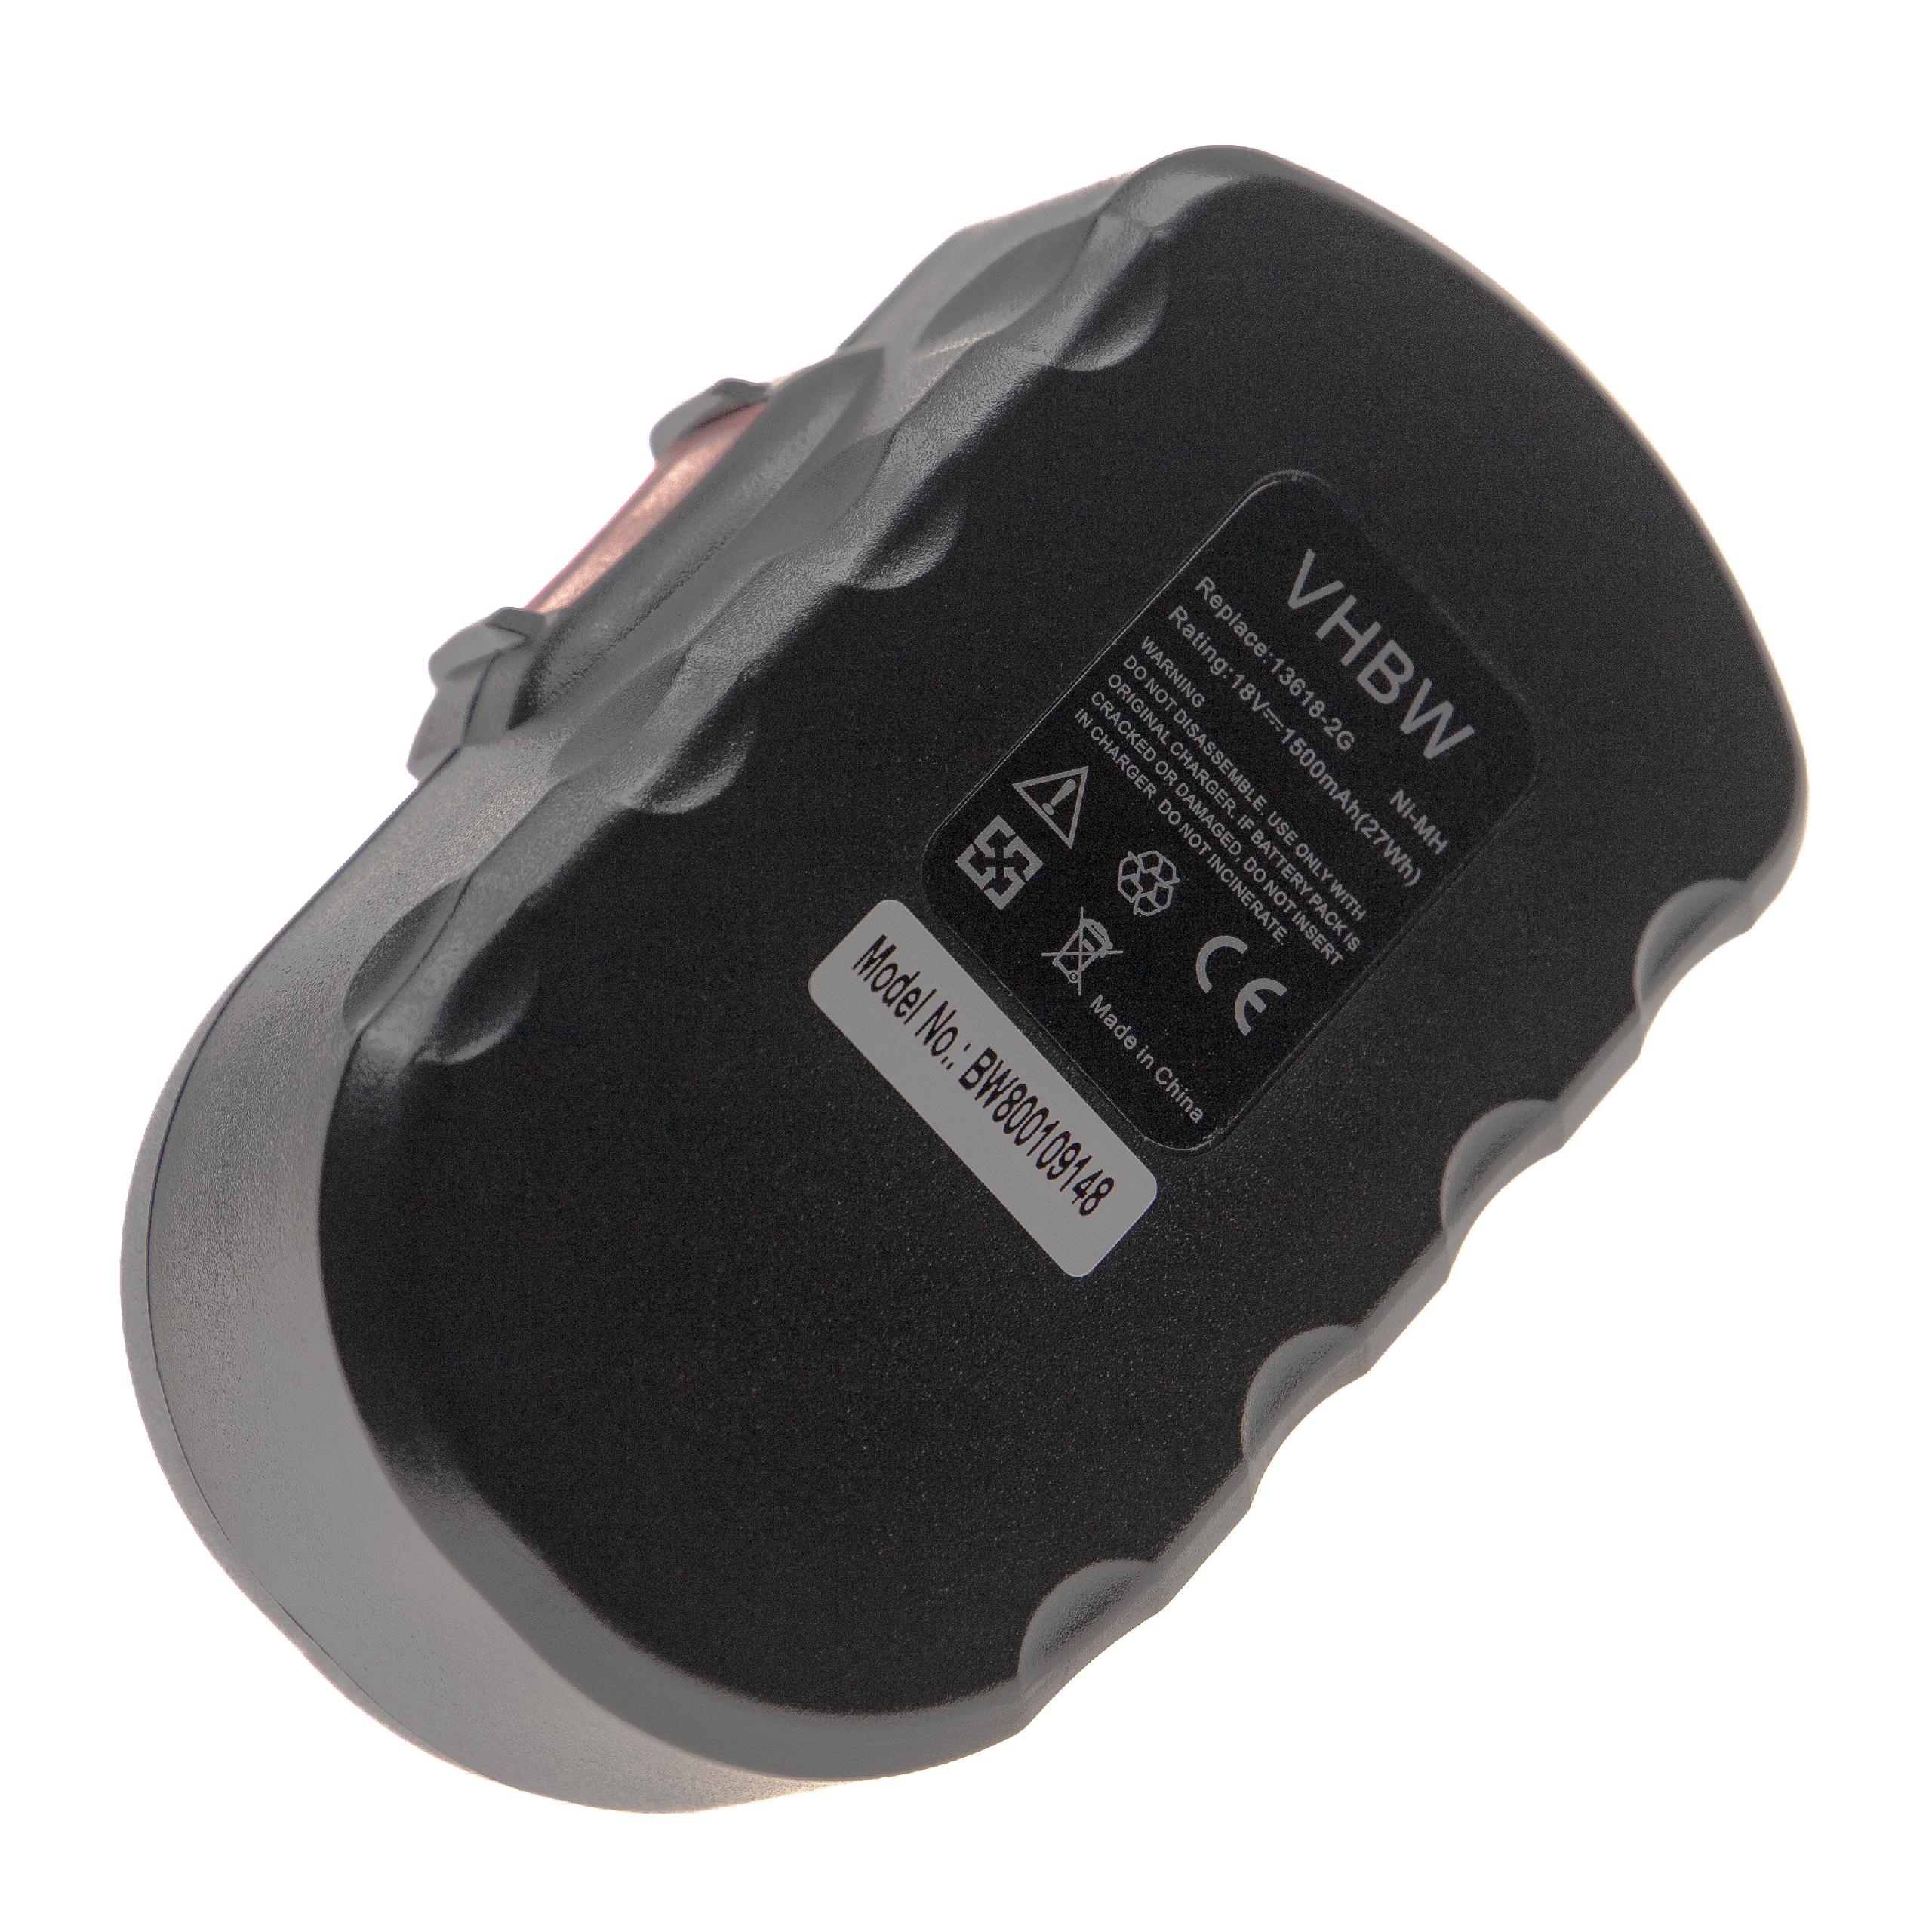 Batterie remplace Bosch 2 607 335 266, 2 607 335 278, 2607335535 pour outil électrique - 1500 mAh, 18 V, NiMH